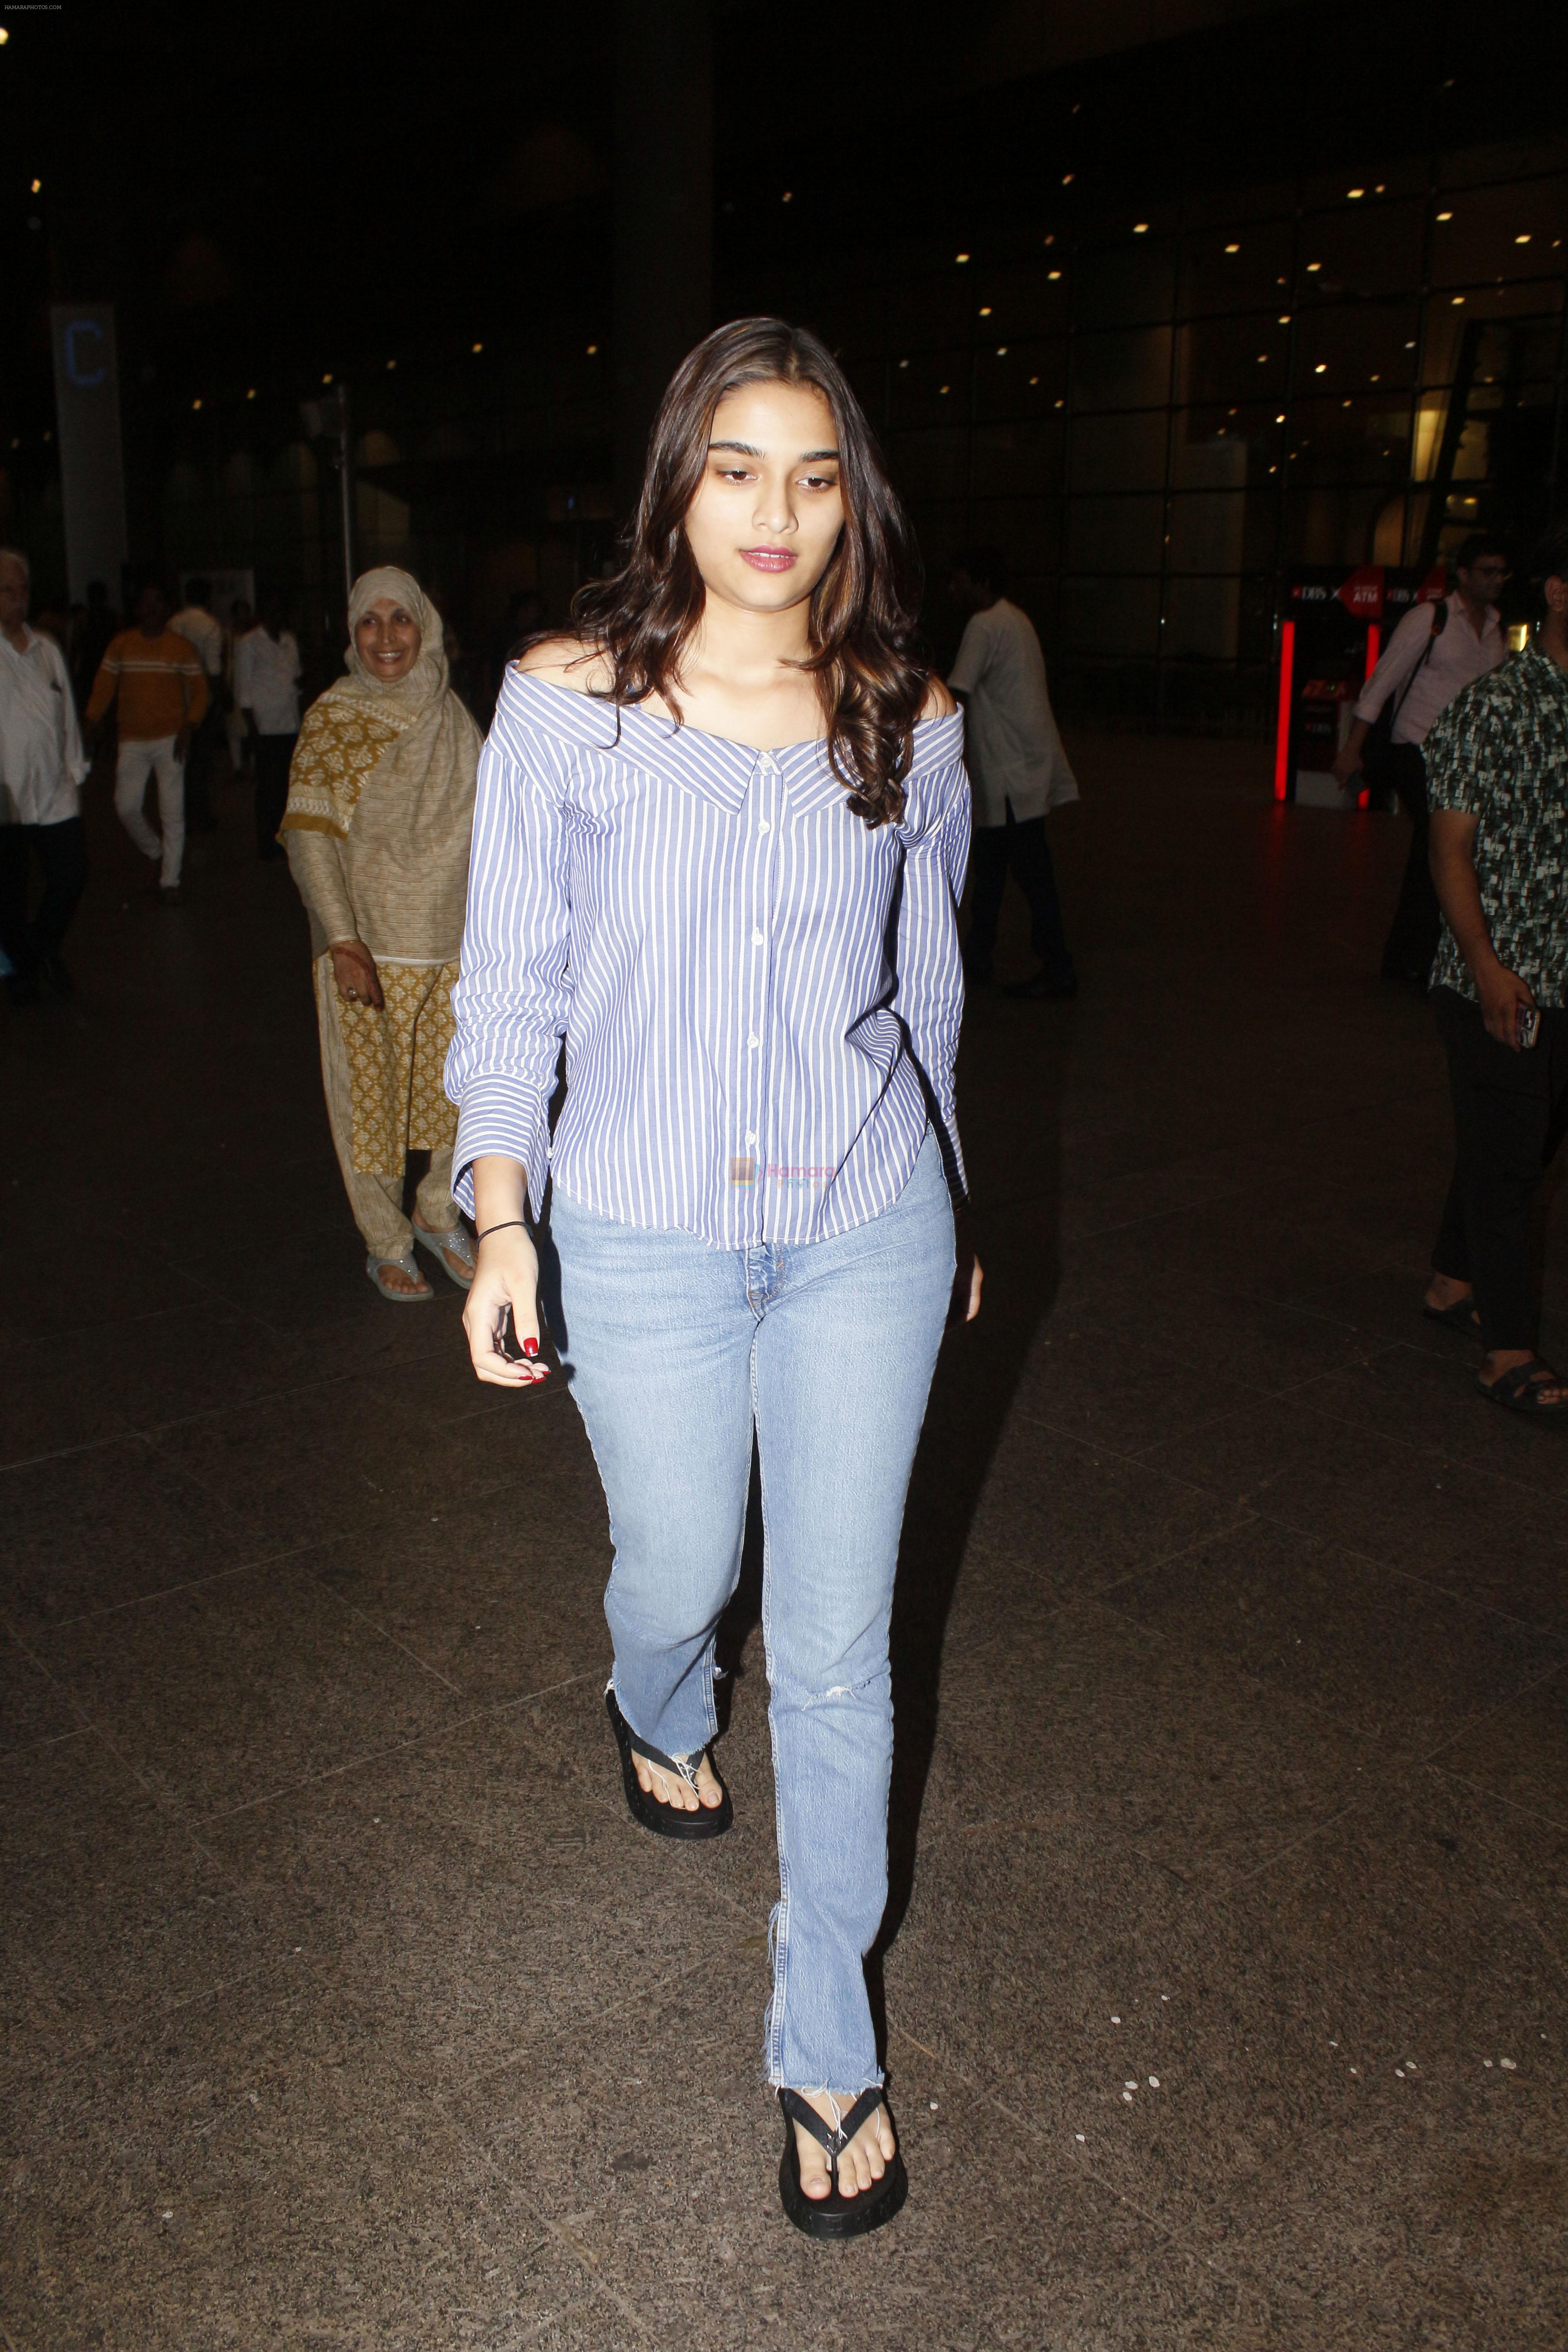 Saiee Manjrekar seen at the airport on wee hours of 5 July 2023